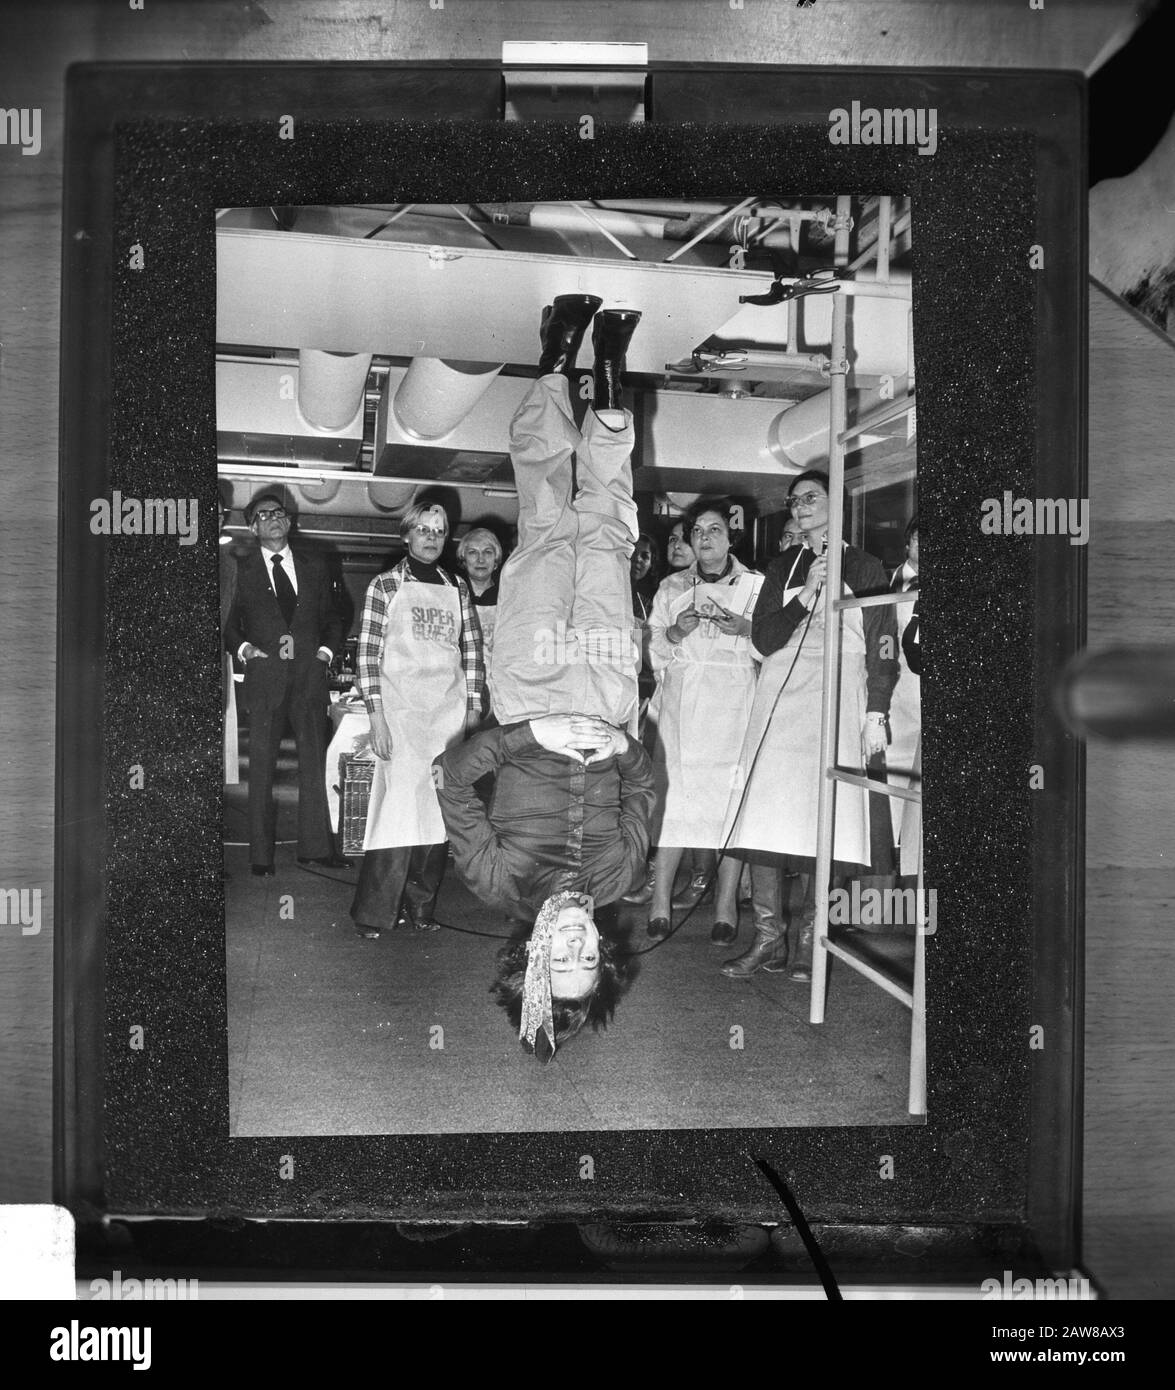 Mann mit Füße Decke Datum: 8. Dezember 1977 Ort: Niederlande Schlagwörter: Klebstoffe, Männer, Decken, Füße Stockfoto